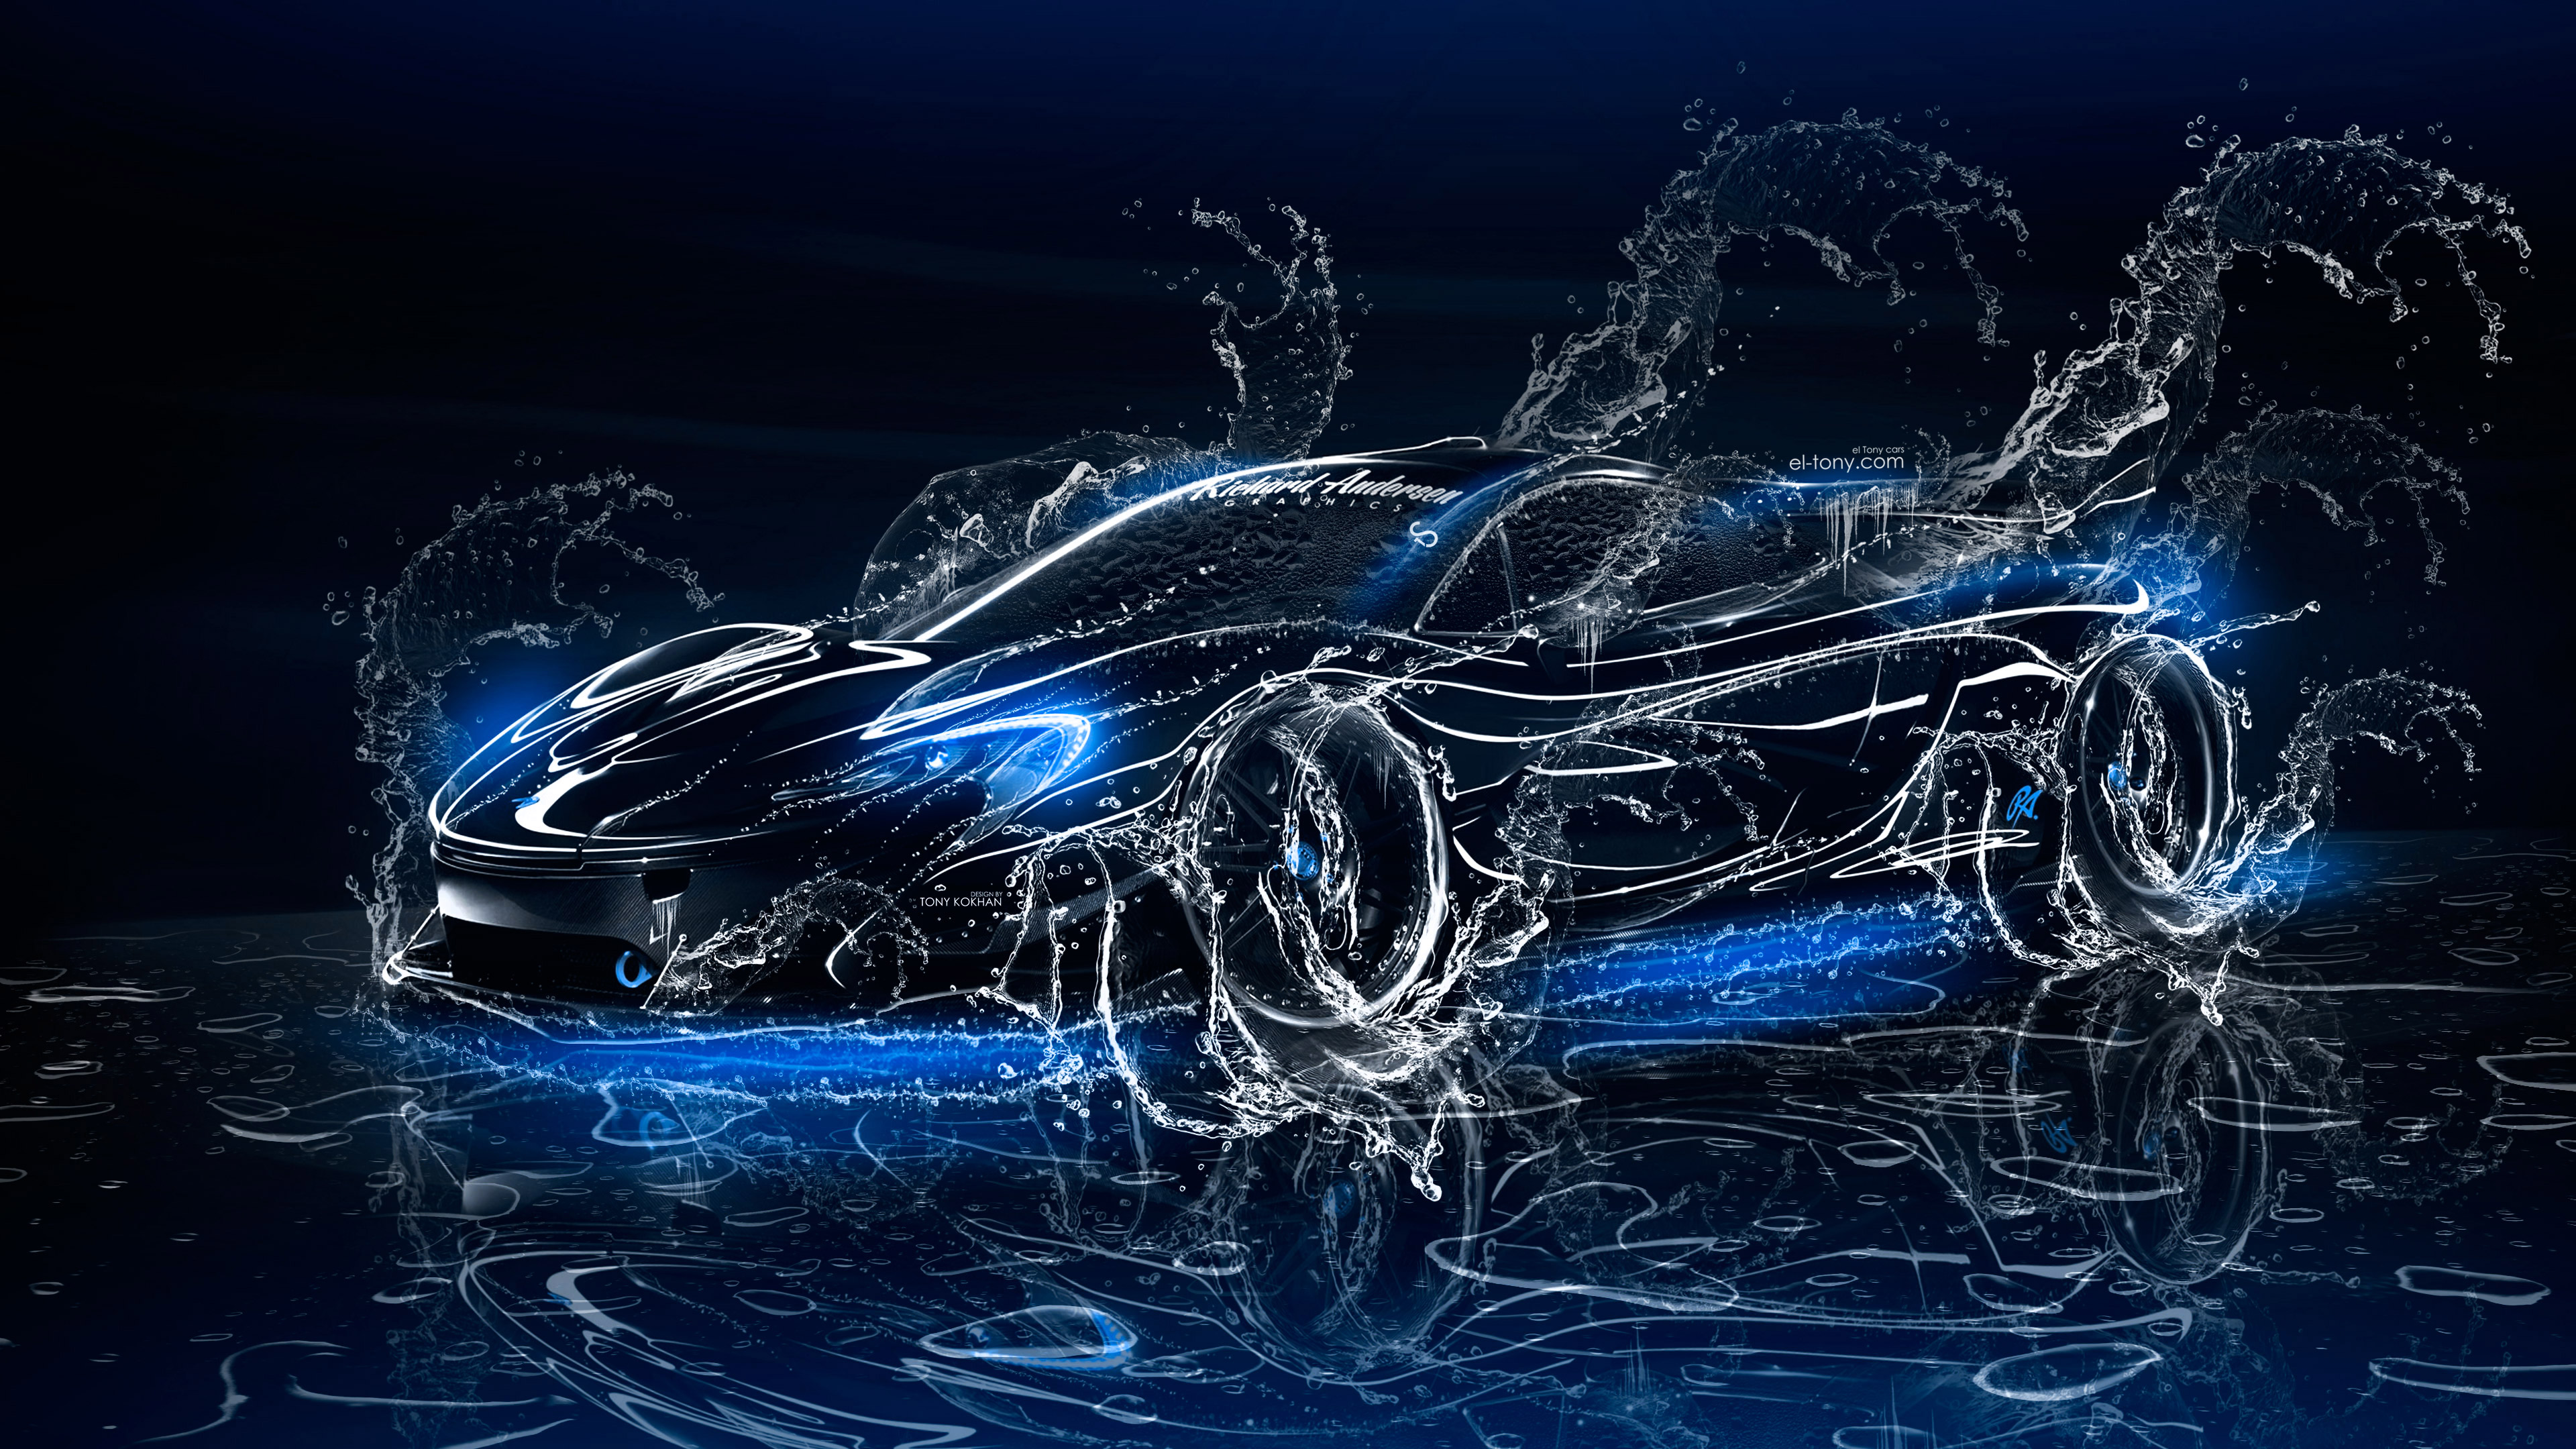 water splash wallpaper,blue,car,vehicle,electric blue,automotive design